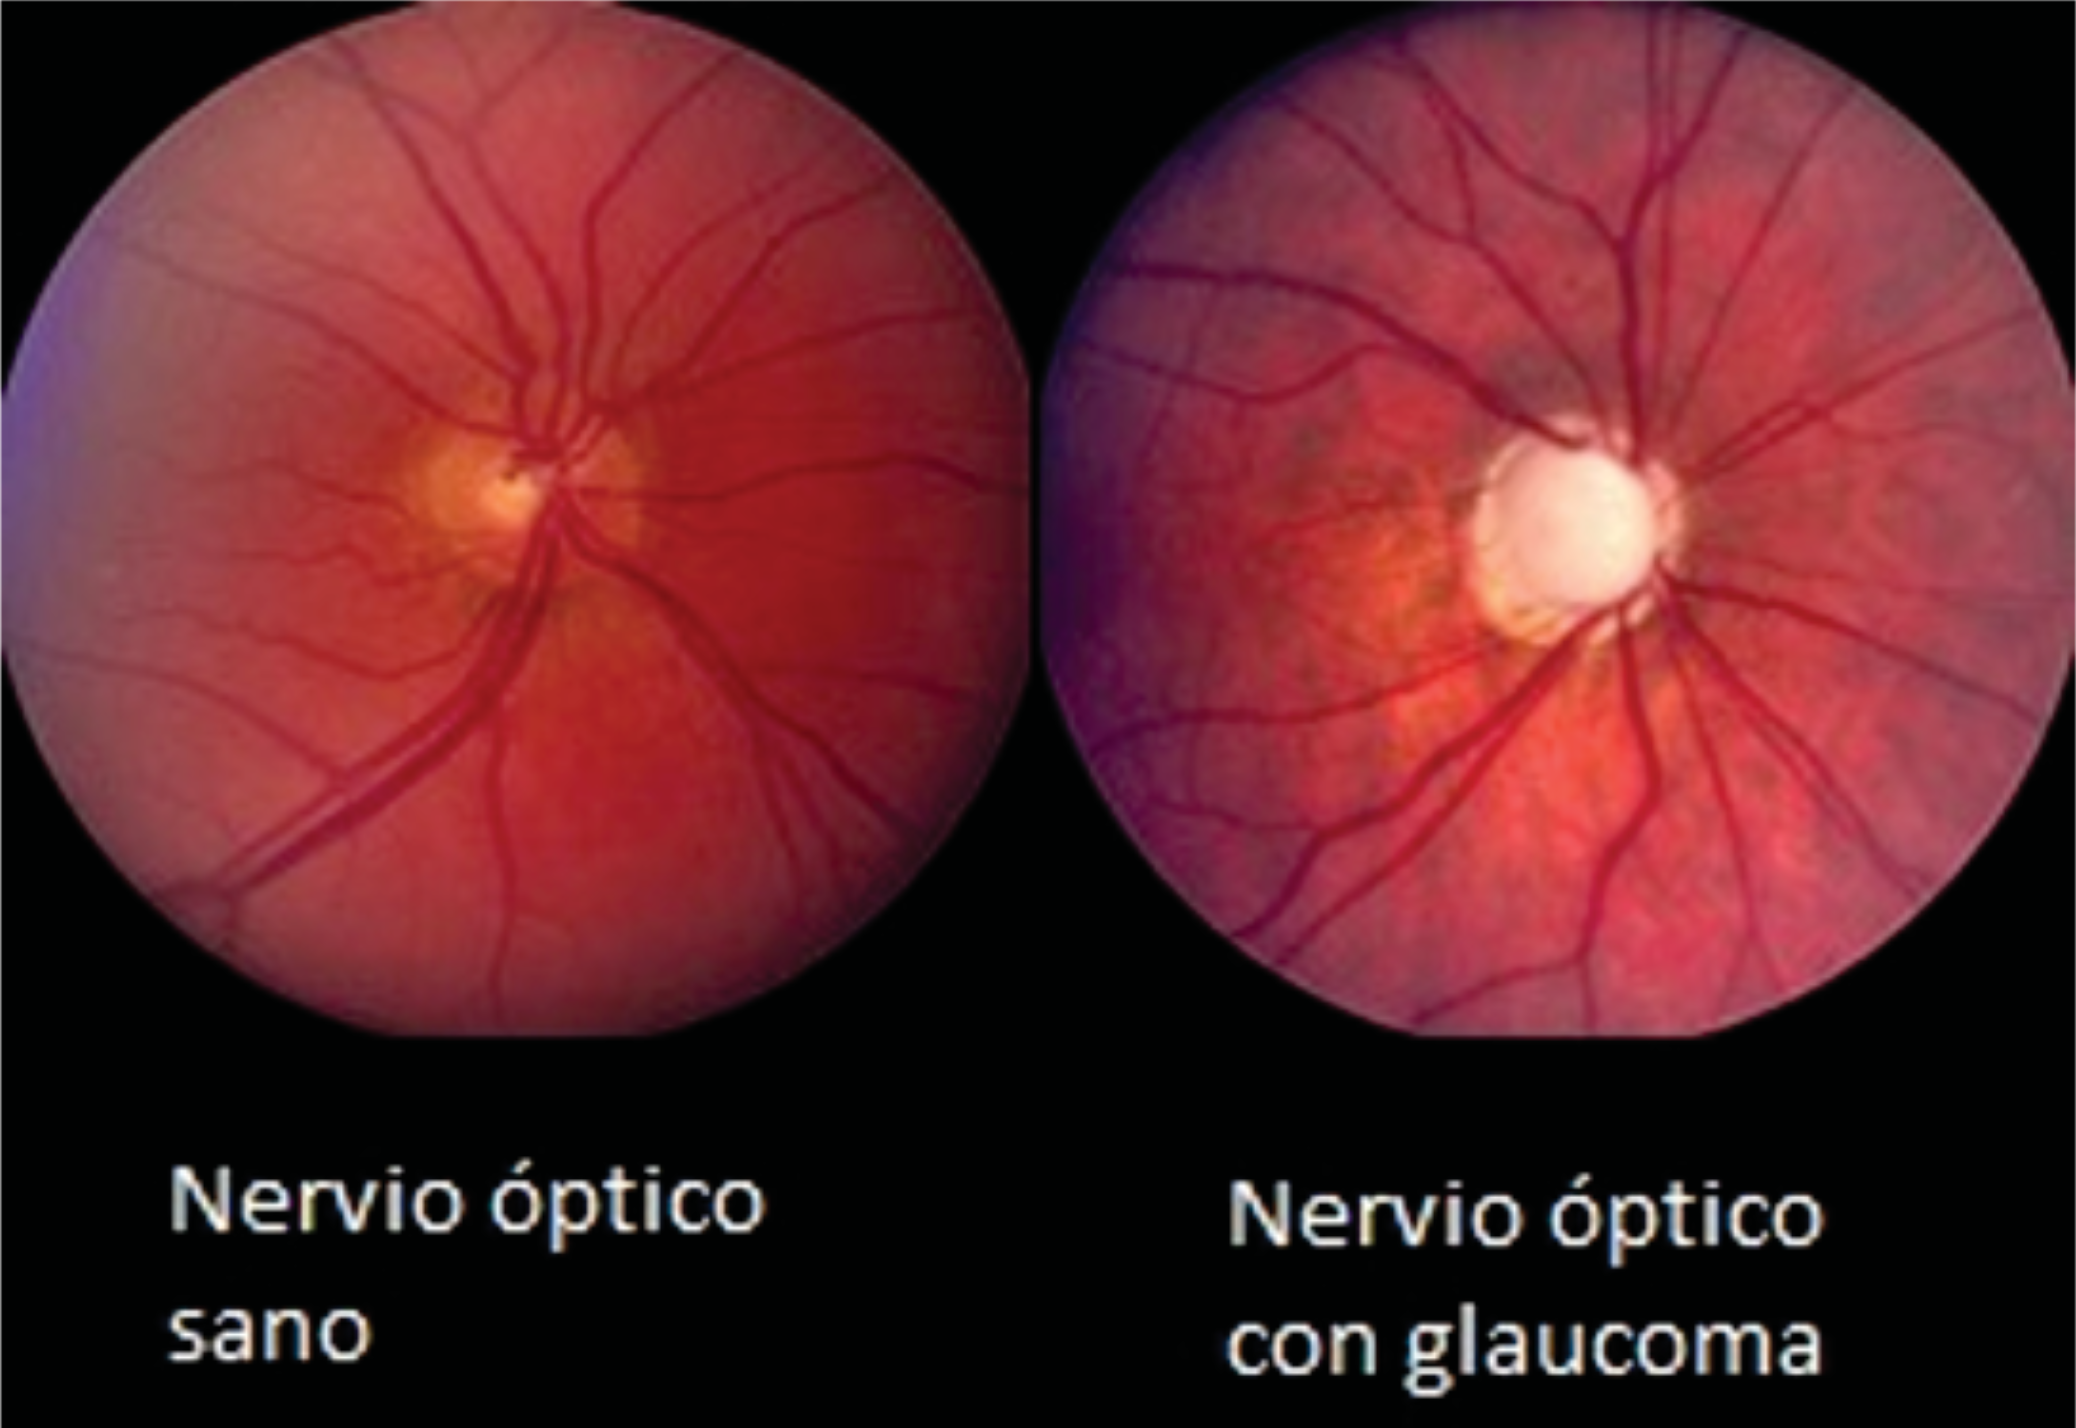 Deep learning' para la detección precoz del glaucoma | Fundación Seneca